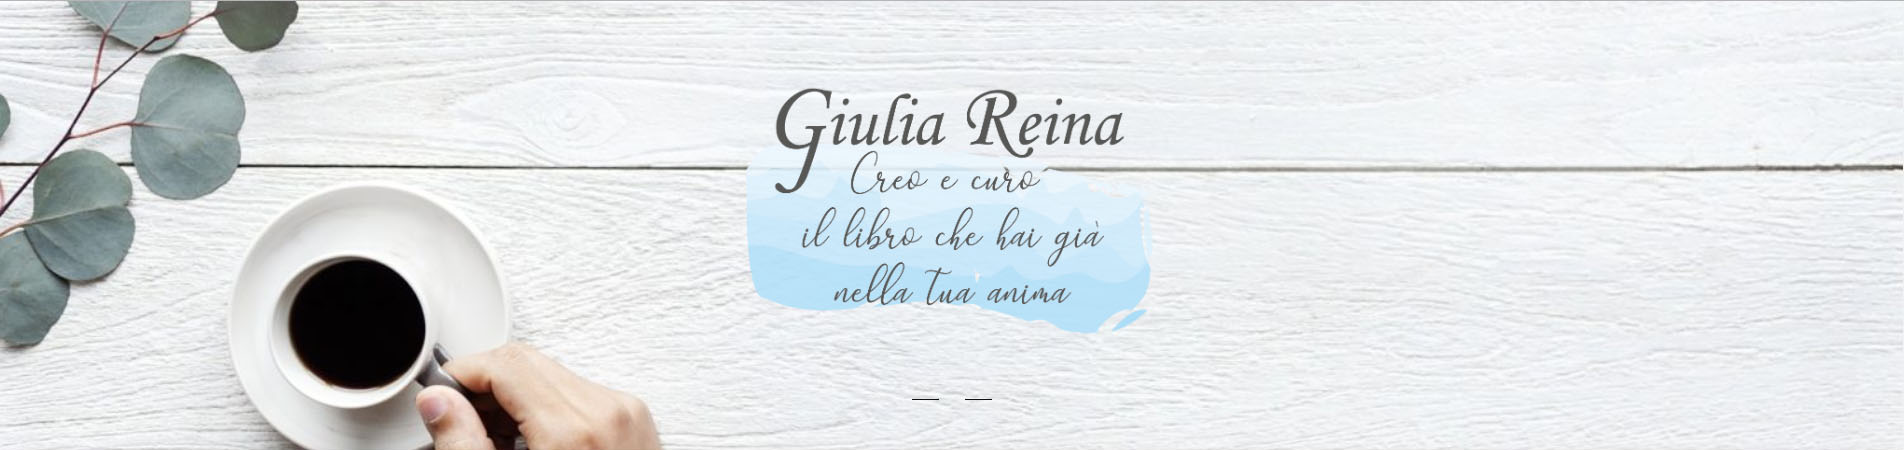 Giulia Reina